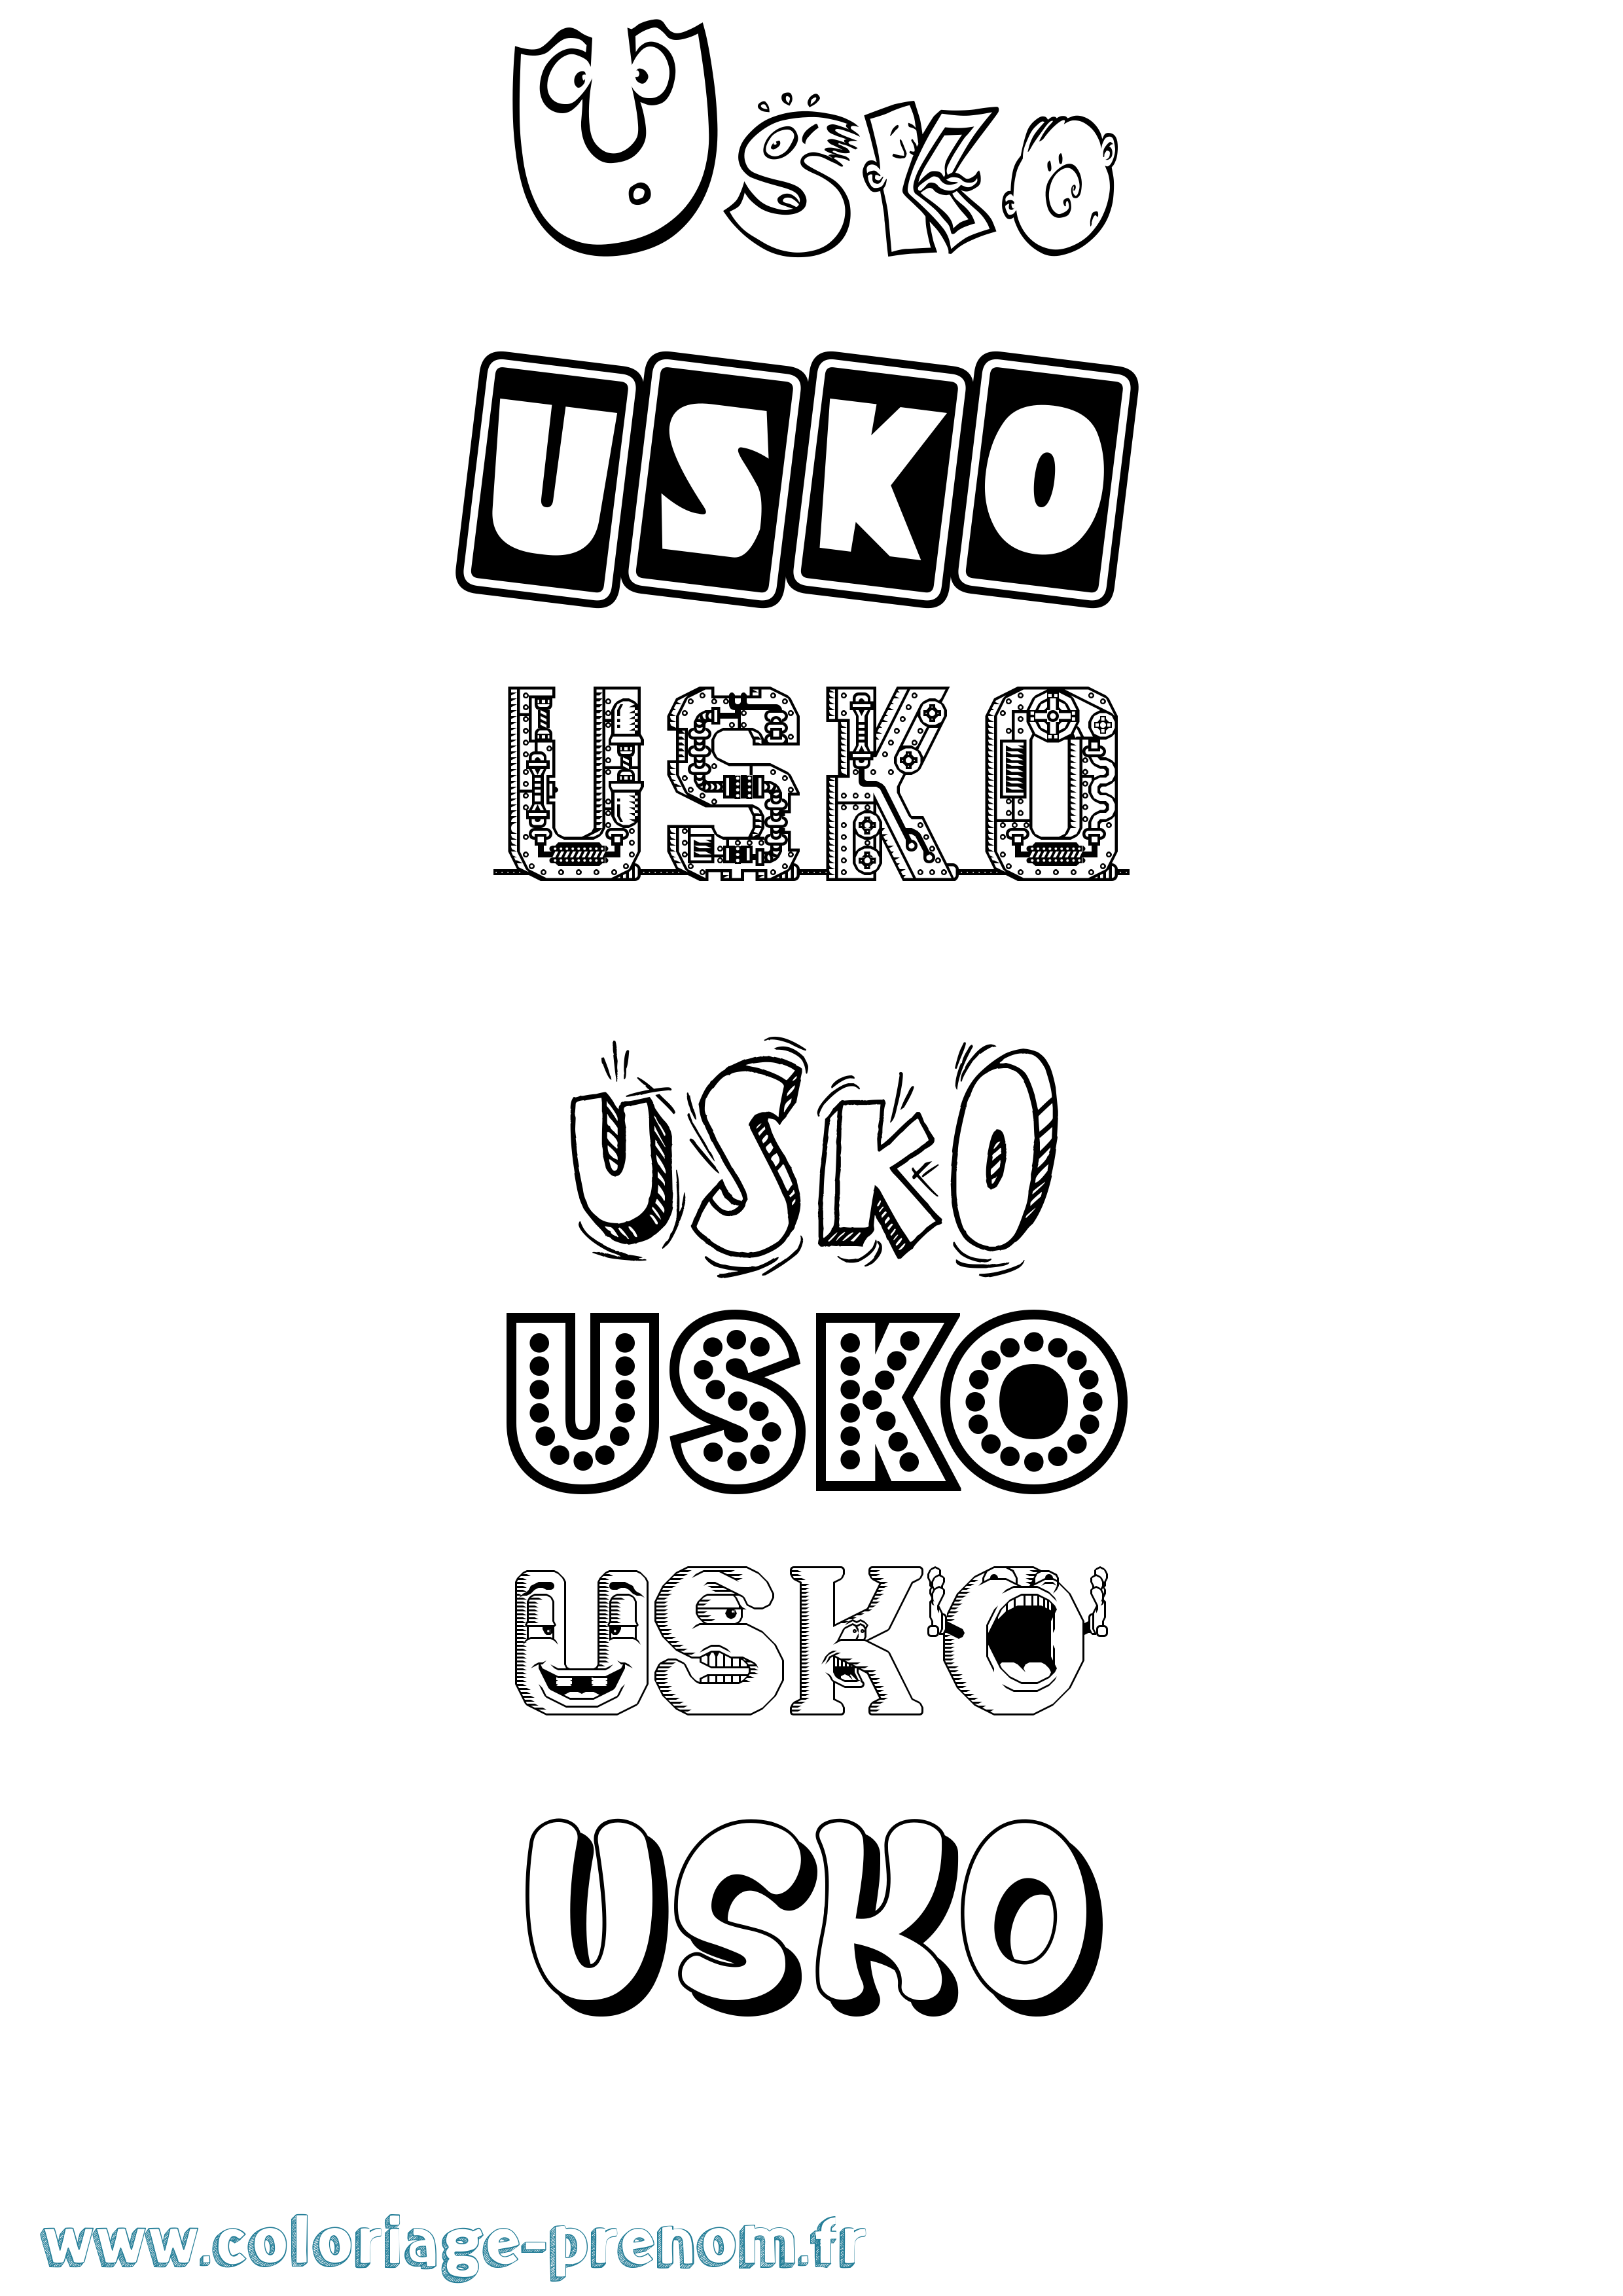 Coloriage prénom Usko Fun